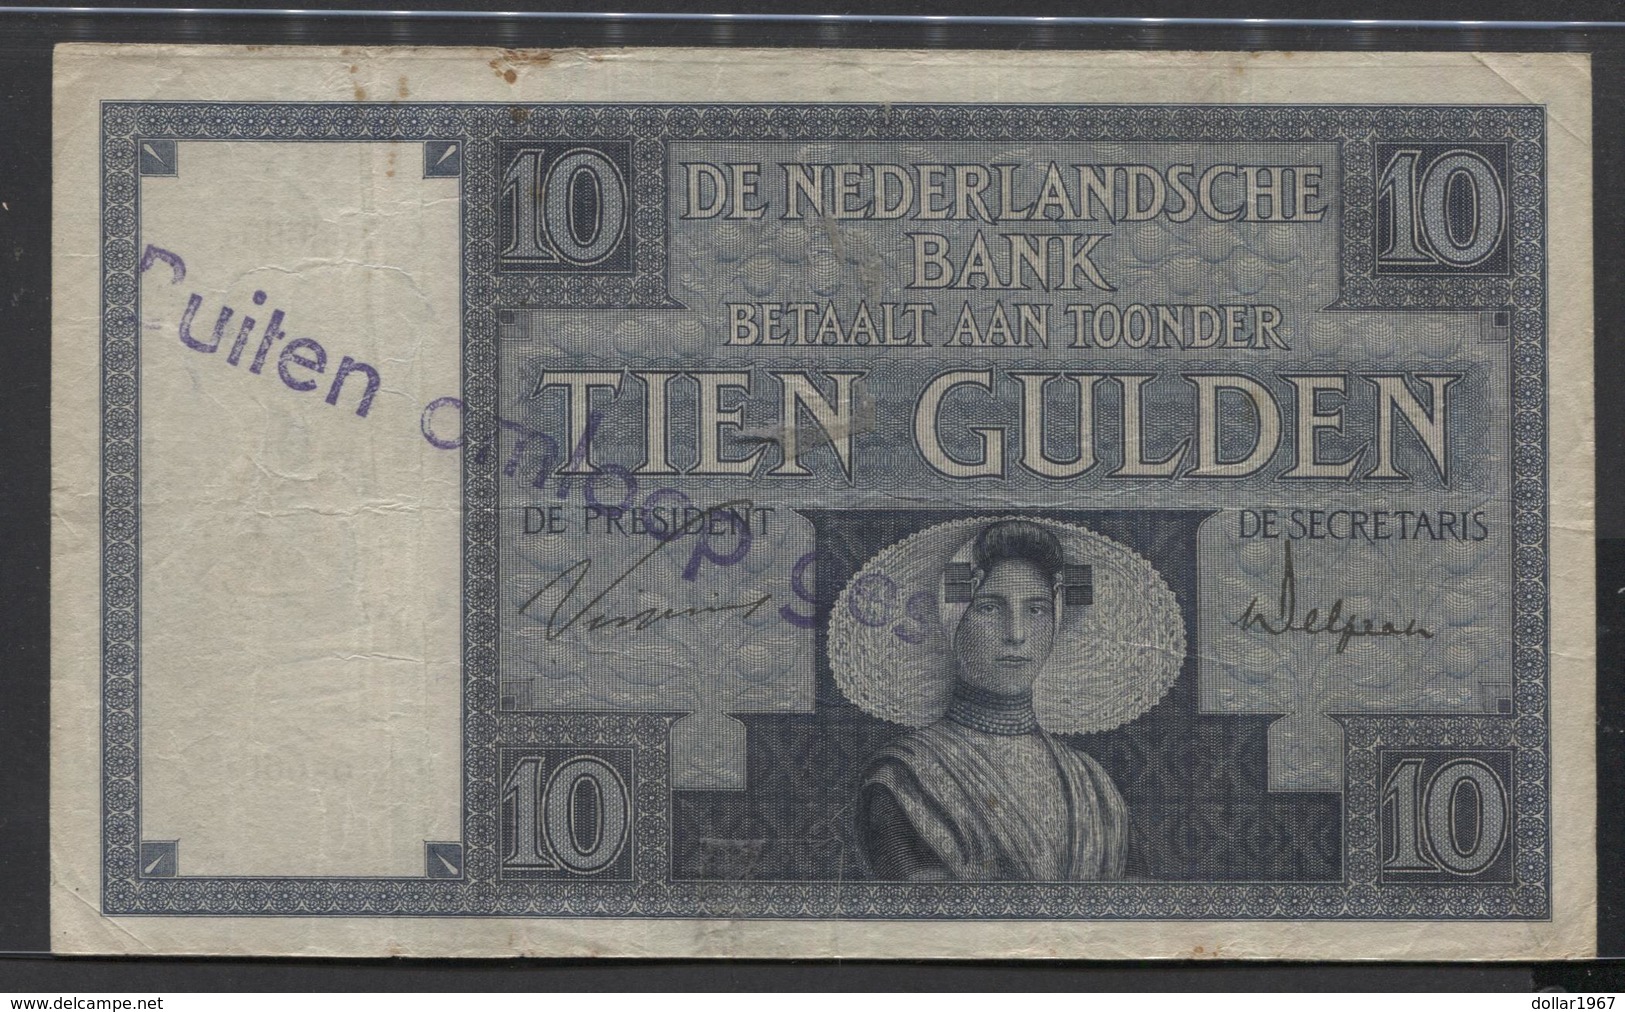 Netherlands  10 Gulden 1-3-1924 - 6-5-1932 - NR OK 056661 - 28 1c - See The 2 Scans For Condition.(Originalscan ) - 10 Florín Holandés (gulden)